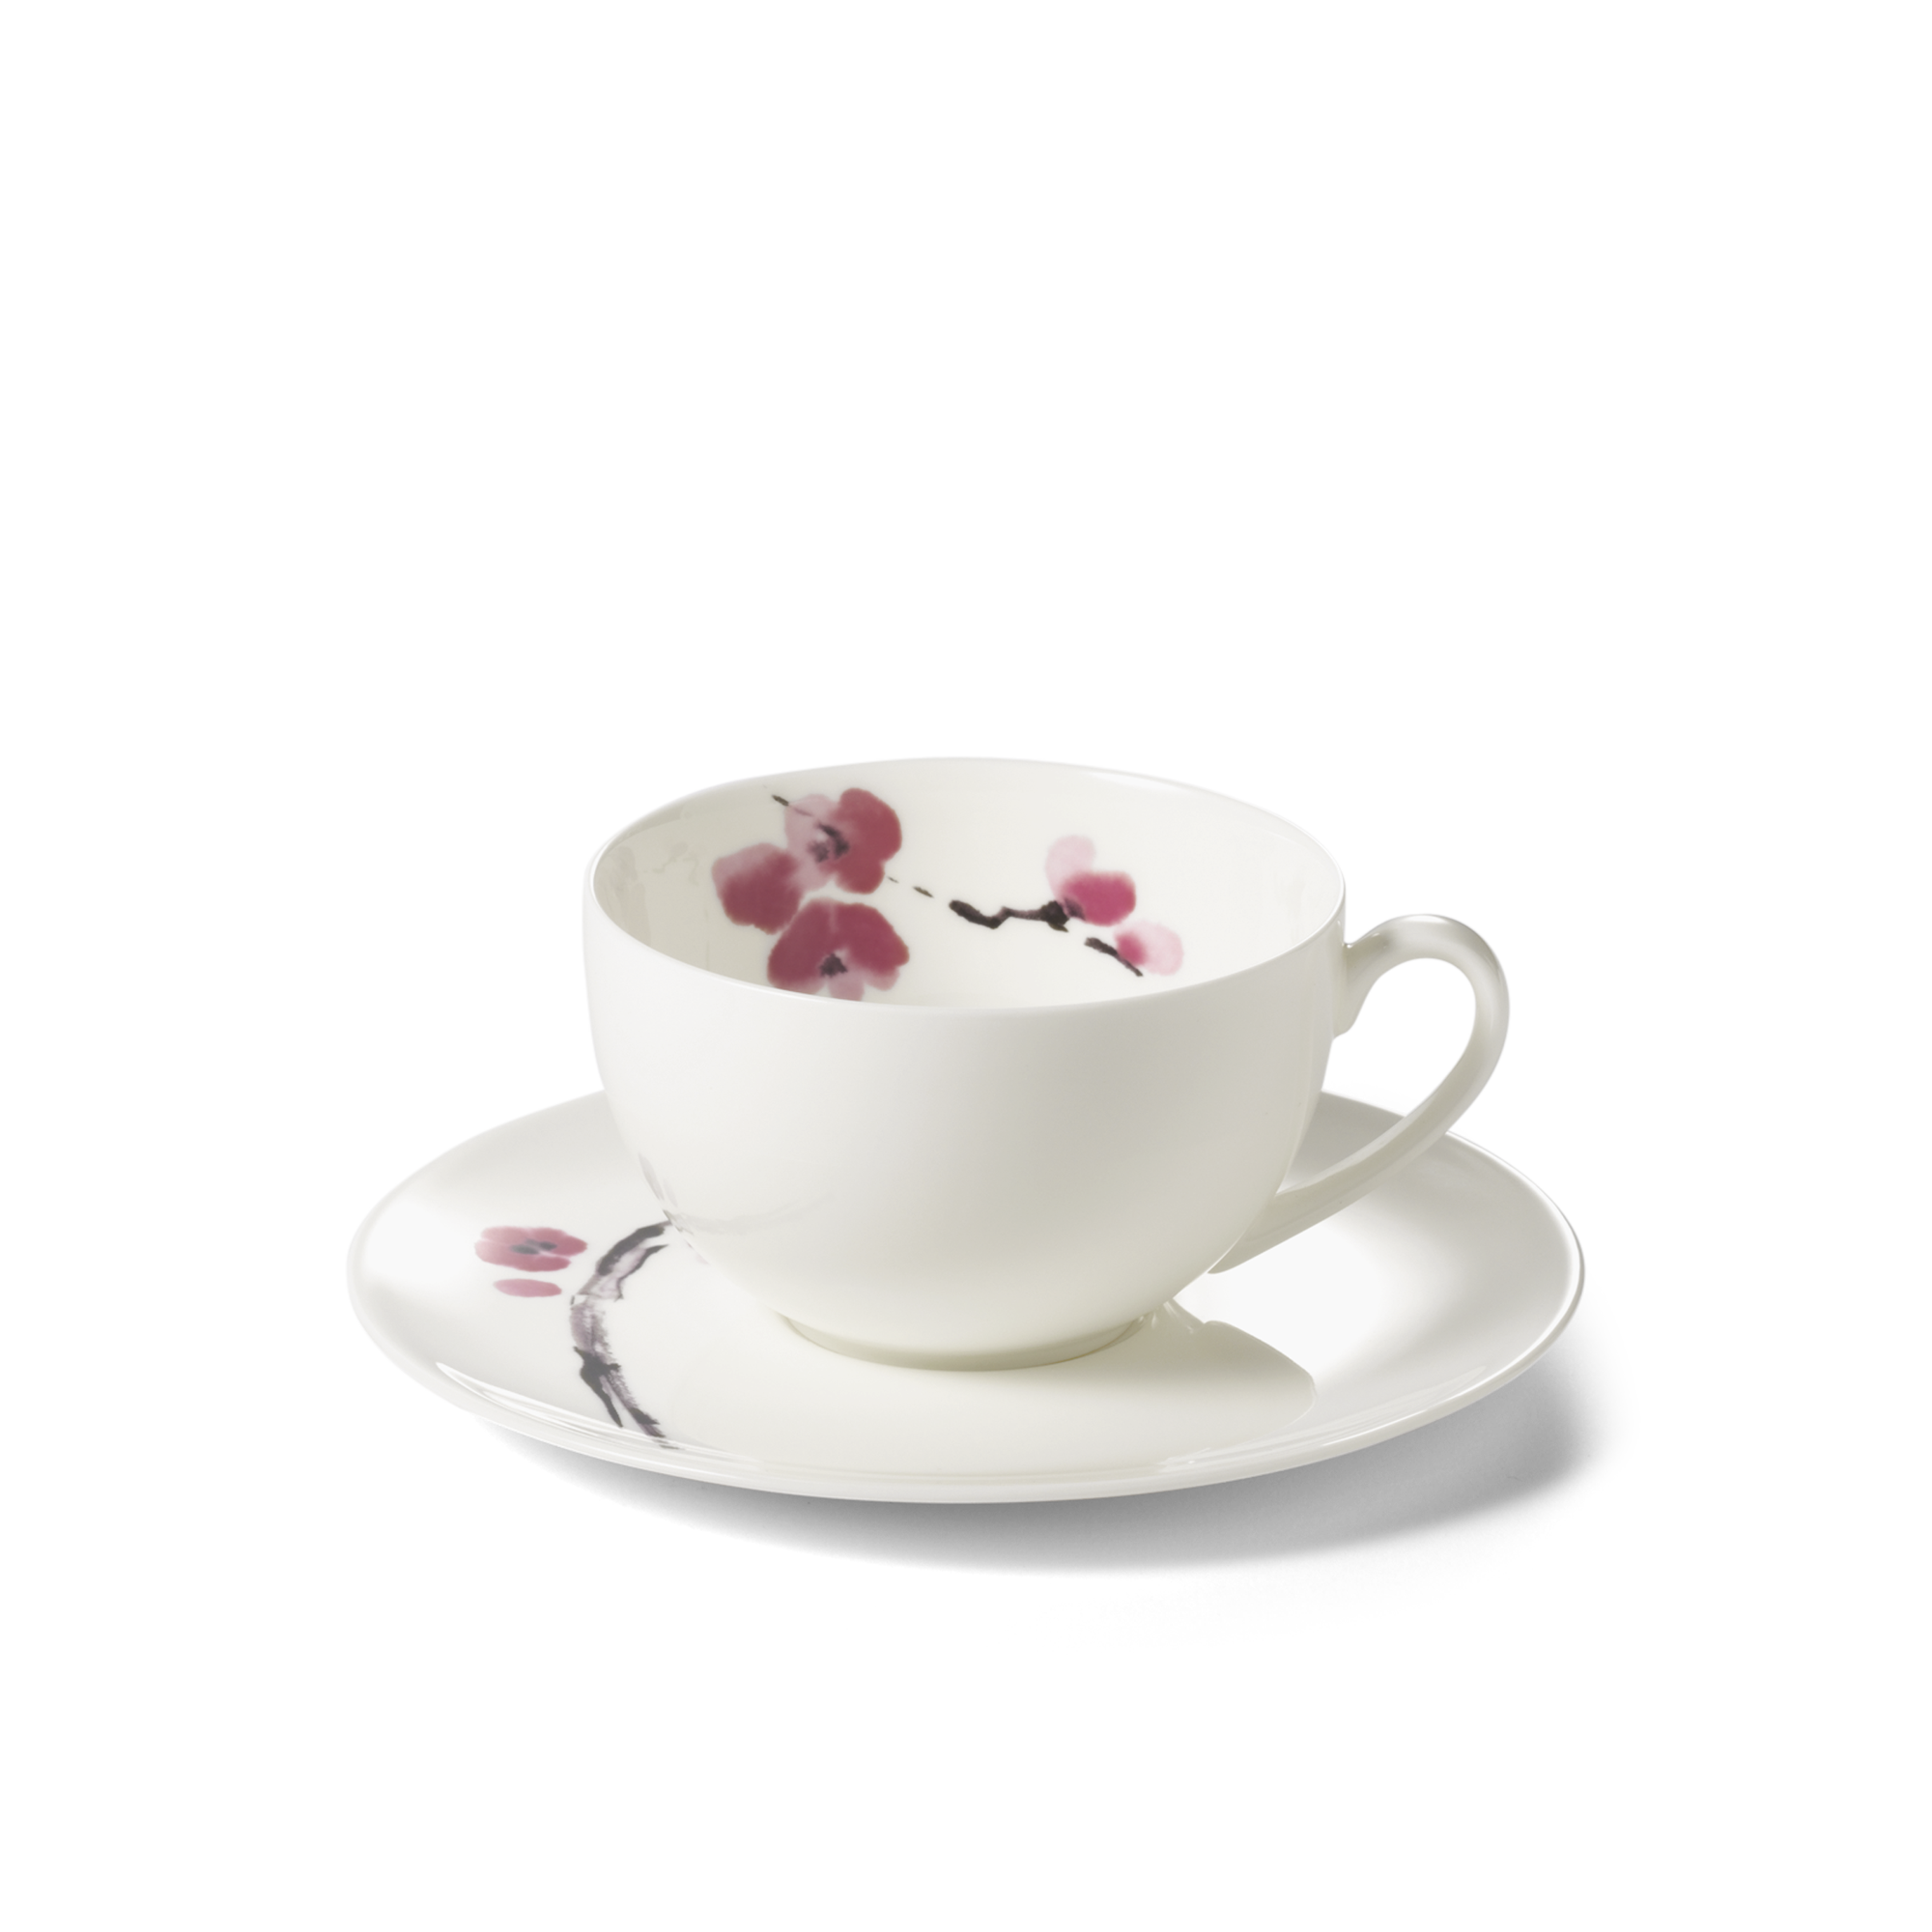 Cherry Blossom coffee mug